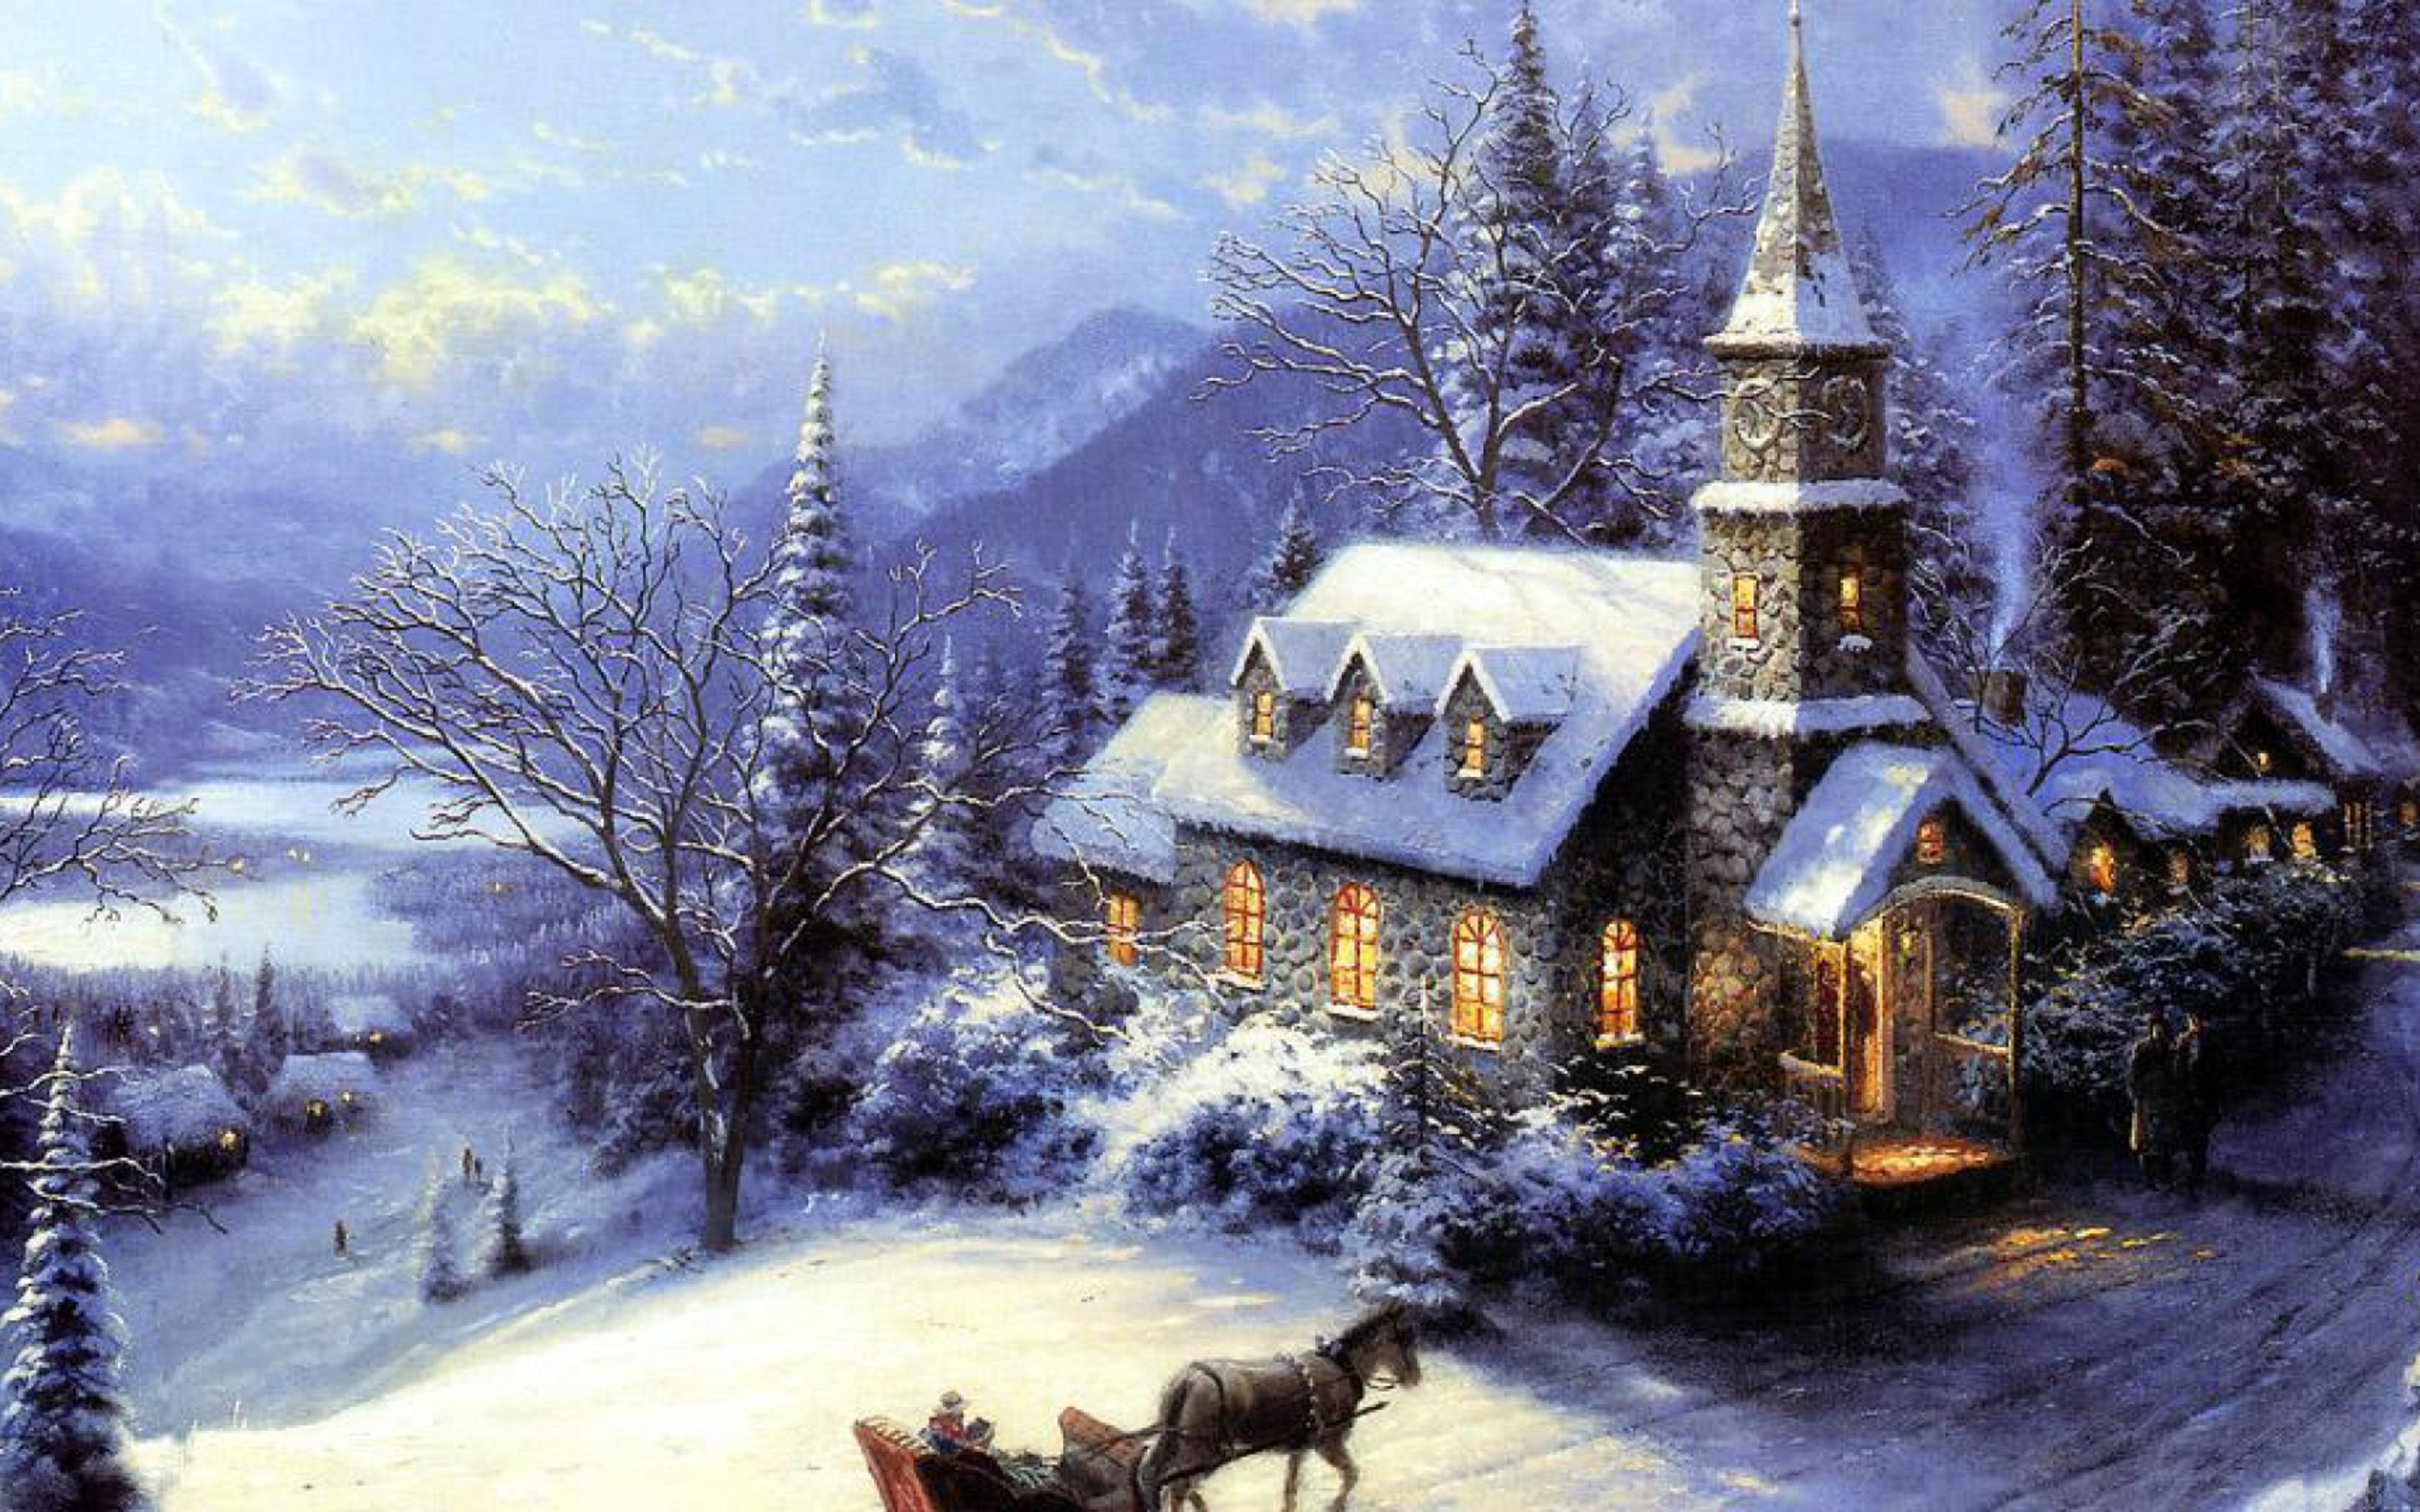 Скачать обои бесплатно Зима, Снег, Дерево, Церковь, Картина, Художественные картинка на рабочий стол ПК